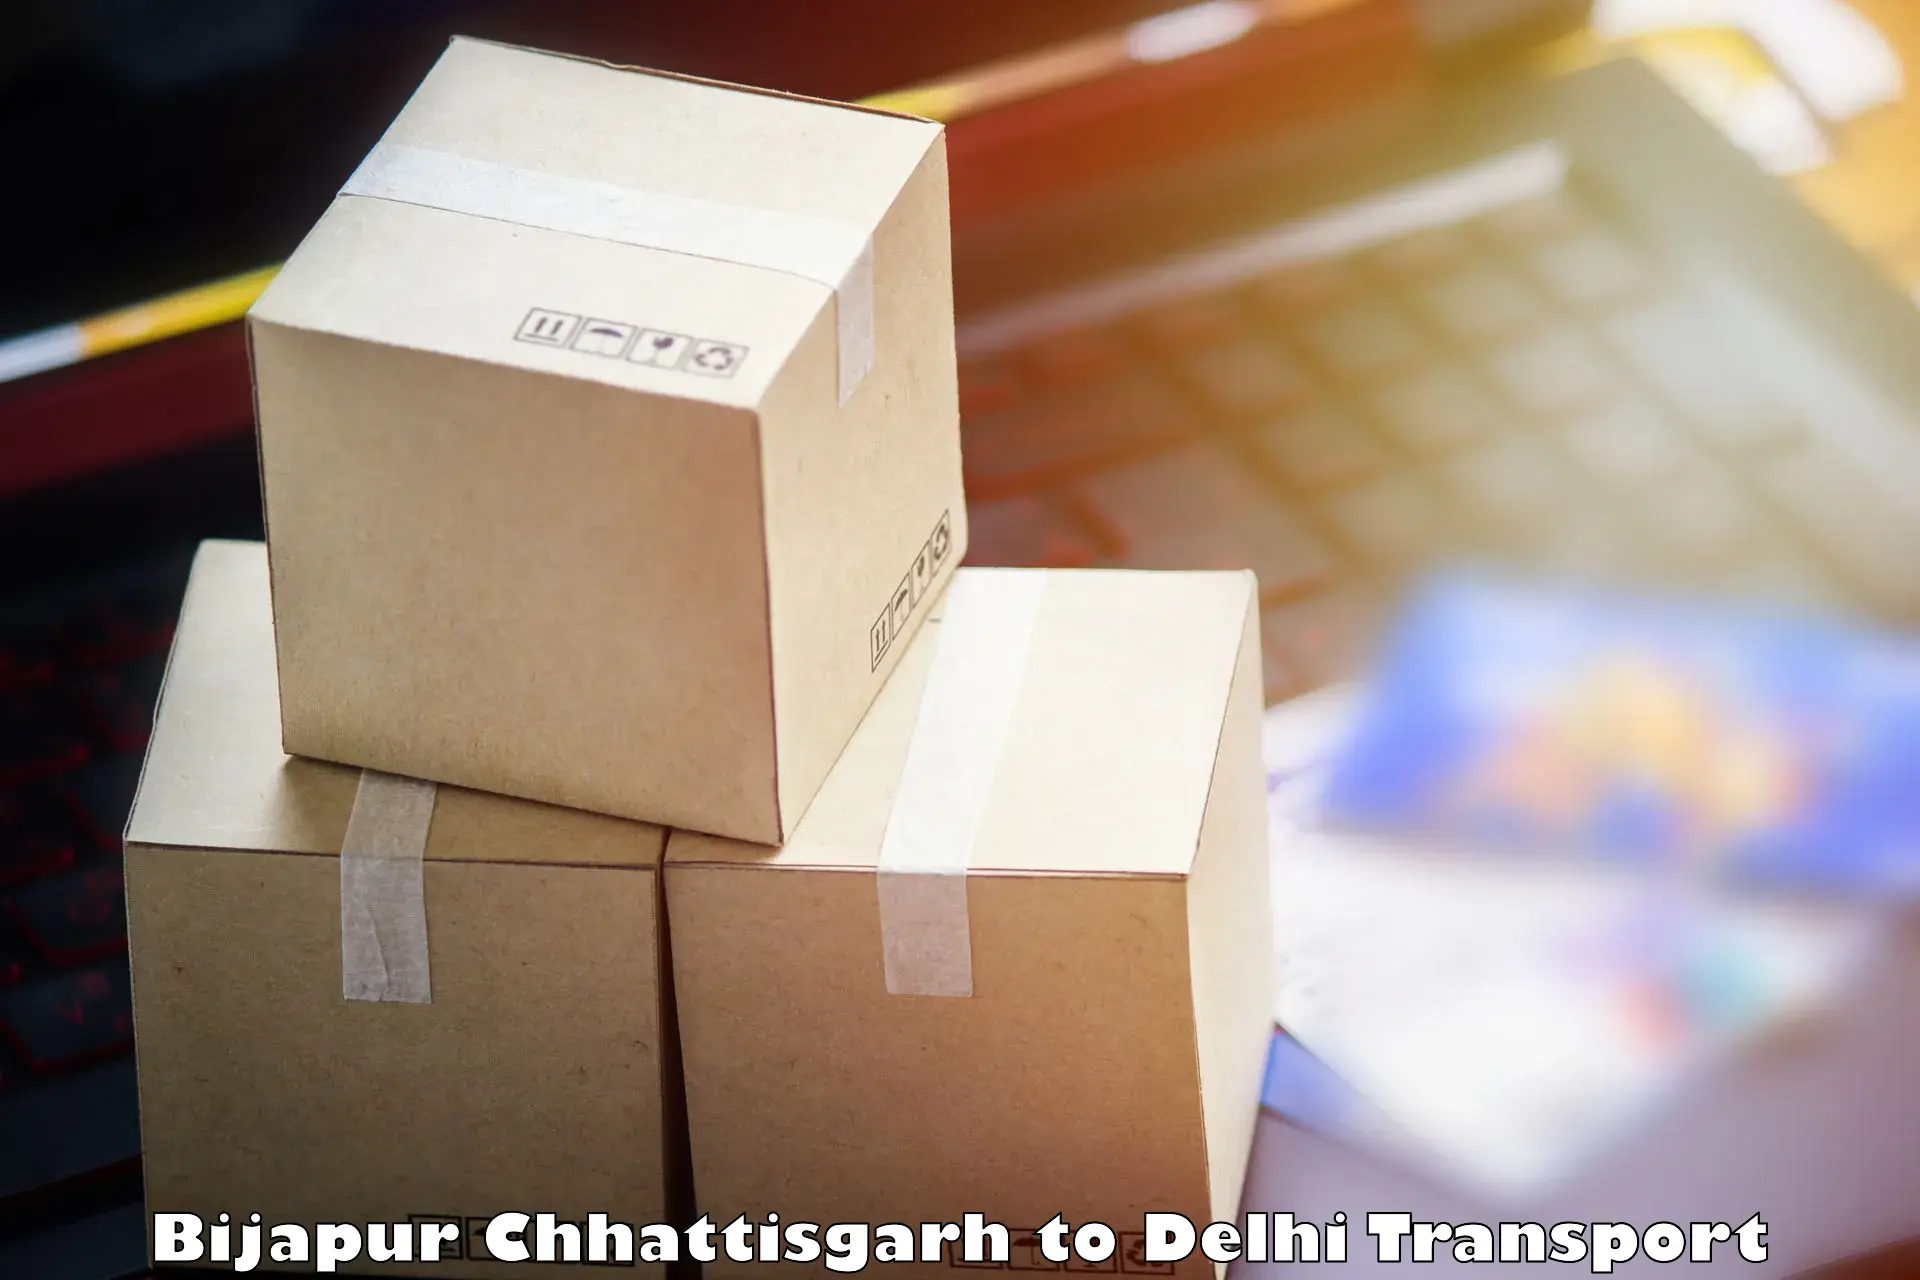 Two wheeler transport services Bijapur Chhattisgarh to Jamia Millia Islamia New Delhi